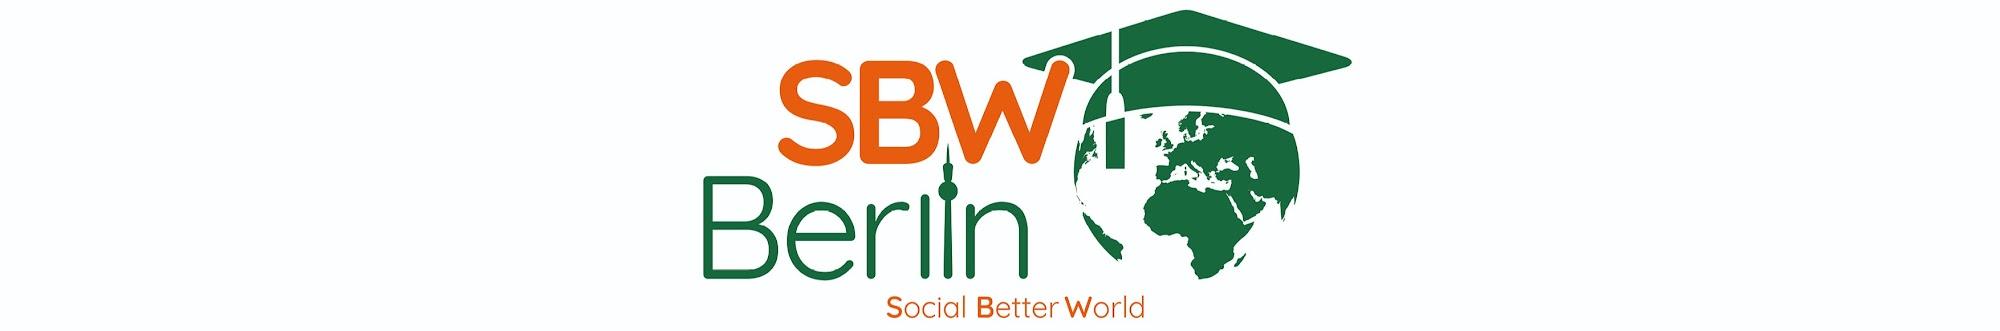 SBW Berlin